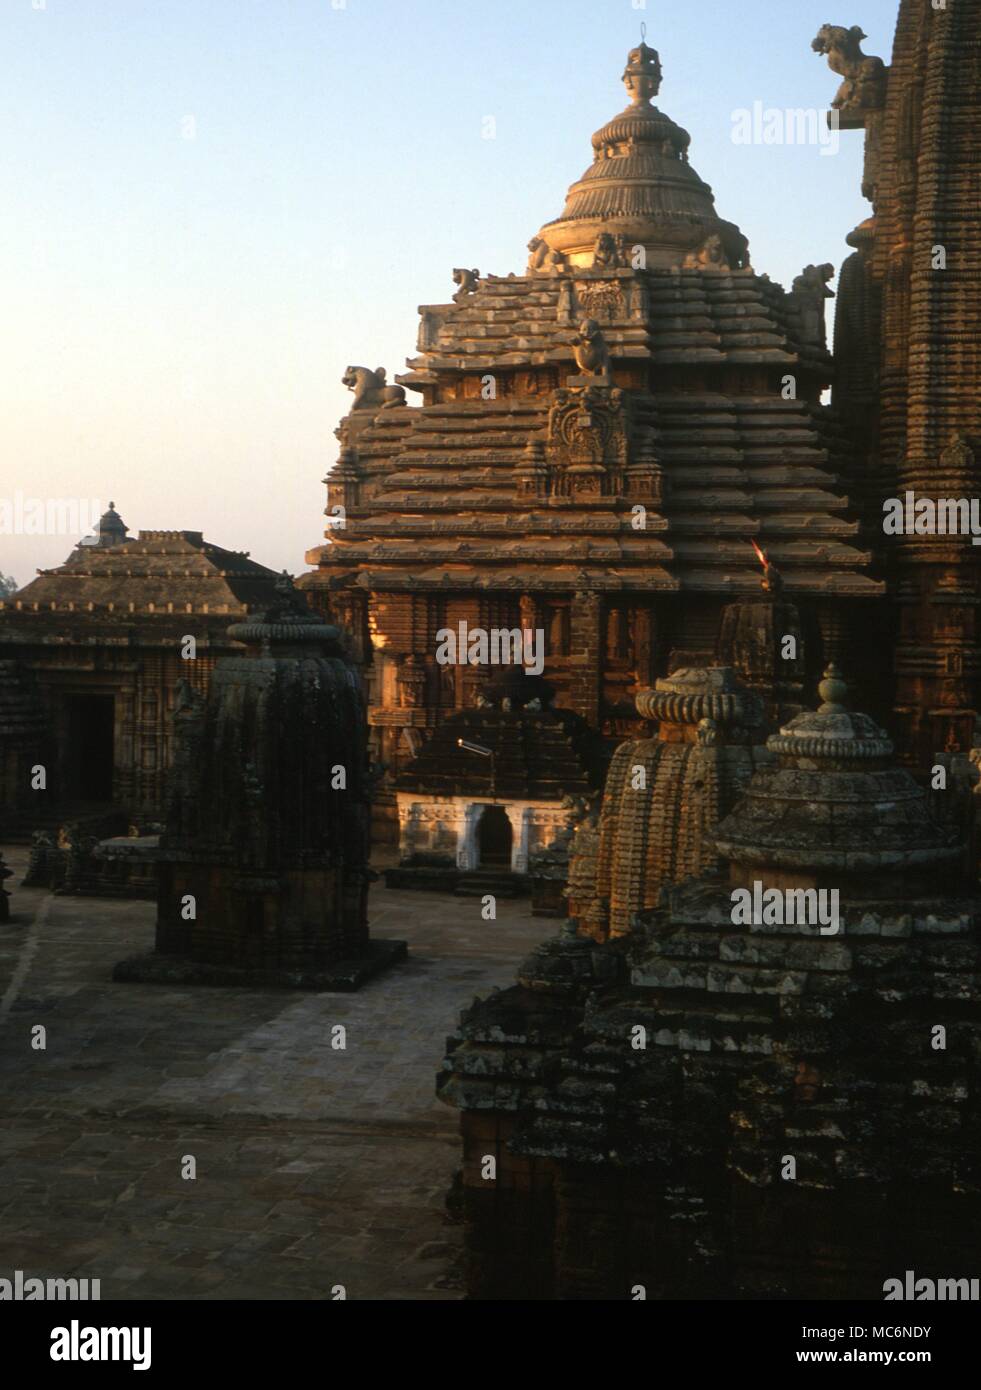 Sacra India Bhubaneswar il grande tempio complesso del Lingaraj dedicato al Signore Trilbhuvaneswar dei tre mondi e risalente al 1104 D.C. Foto Stock